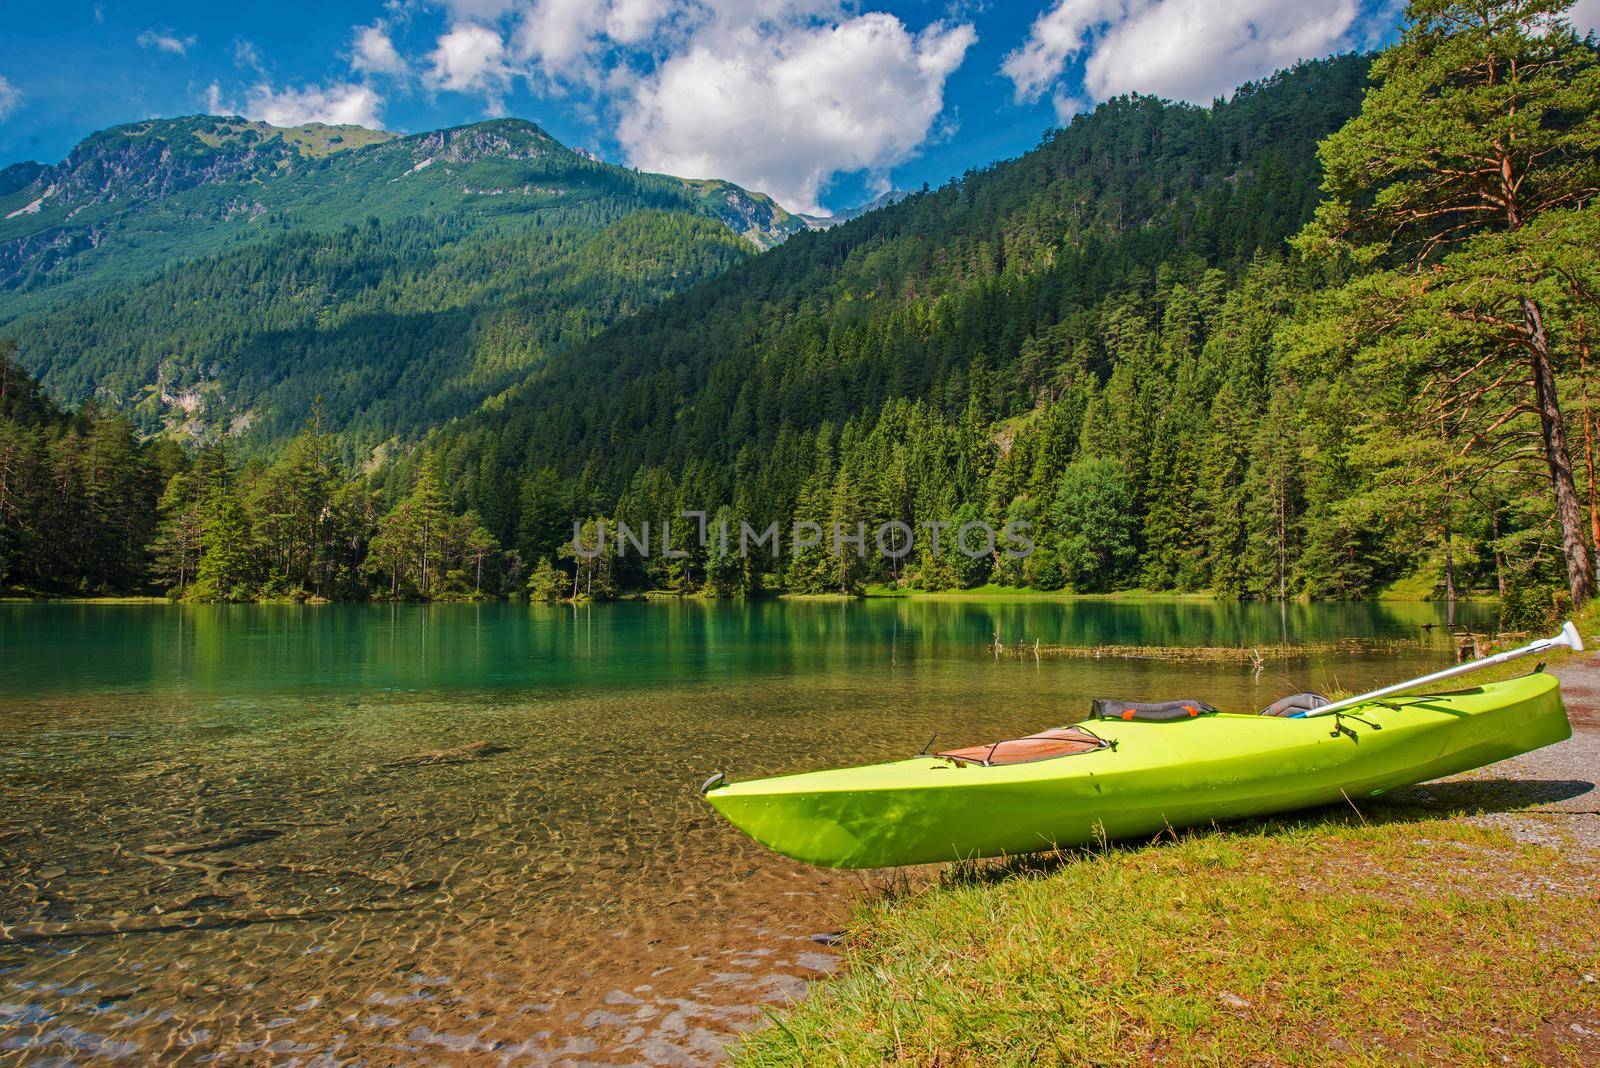 Scenic Bavarian Lake Kayaking During Summer Season by welcomia